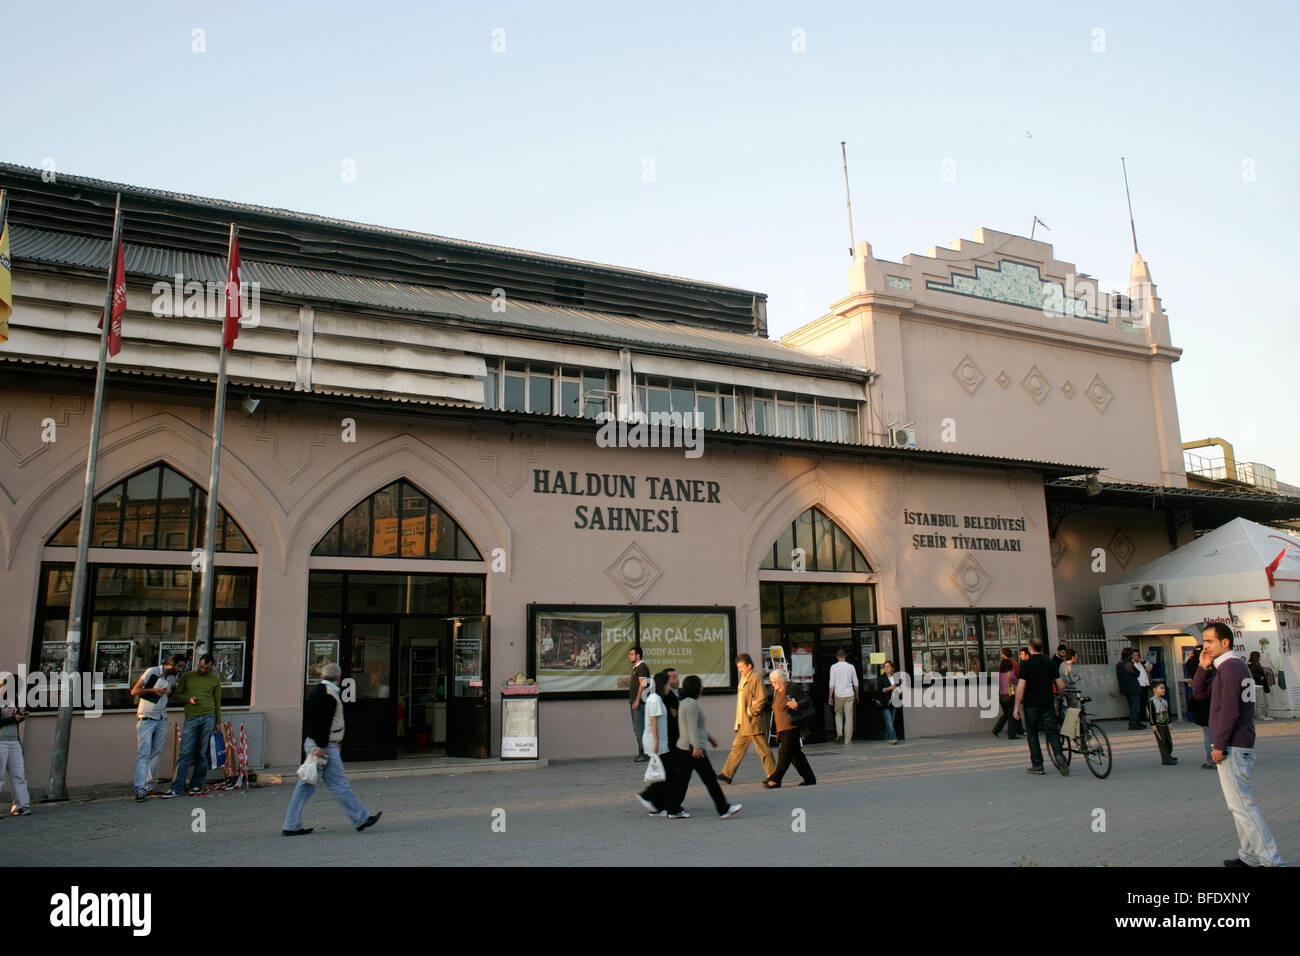 Haldun Taner Theatre in Kadikoy, Istanbul, Turkey Stock Photo